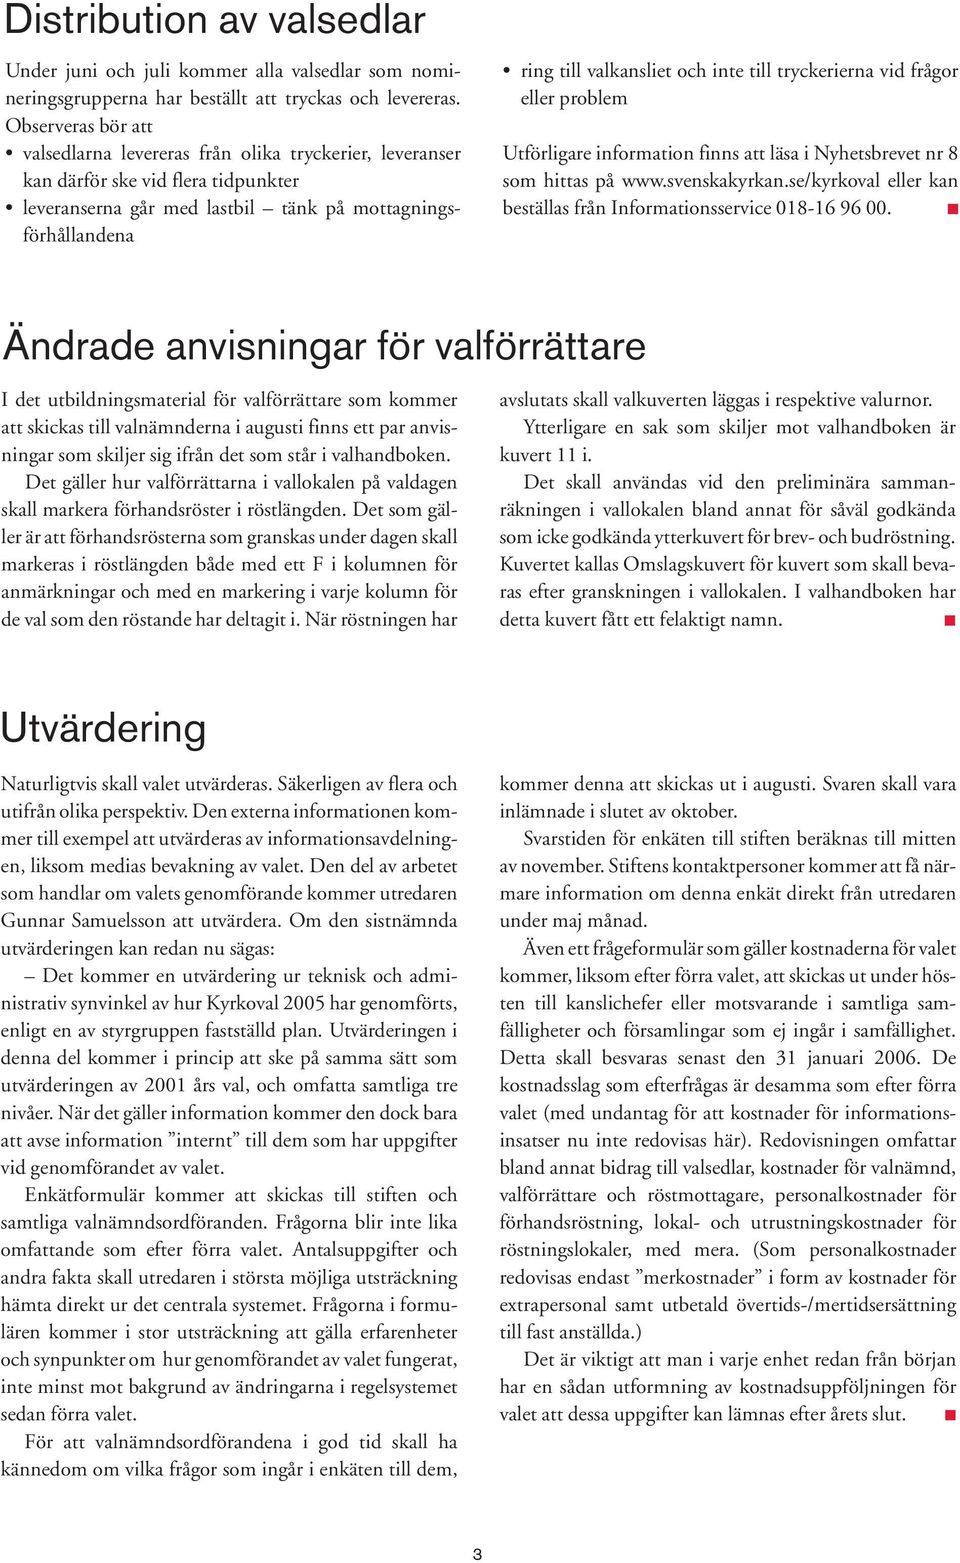 inte till tryckerierna vid frågor eller problem Utförligare information finns att läsa i Nyhetsbrevet nr 8 som hittas på www.svenskakyrkan.